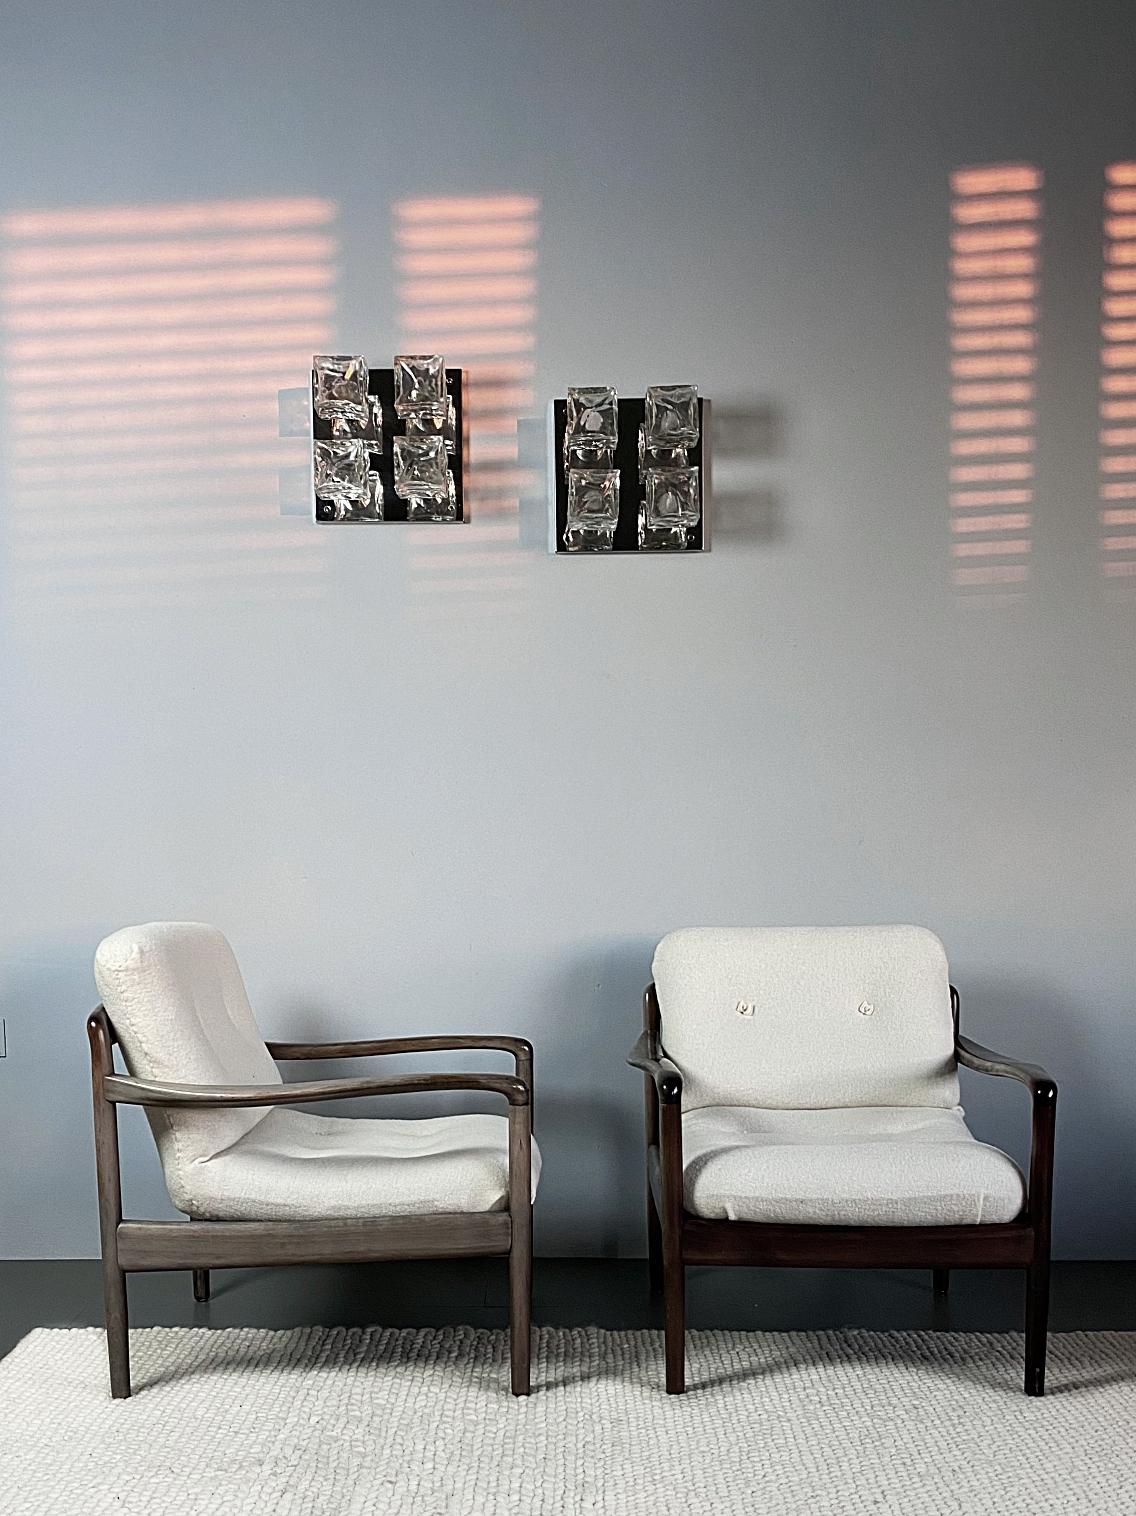 Zeitlose Lounge-Sessel von Knoll International aus den 1960er Jahren. Die Stühle wurden von unserer Polsterei mit einem hochwertigen Schafwollmischgewebe in Weiß frisch aufgearbeitet - ein schöner Kontrast zum Holzgestell. Sehr guter